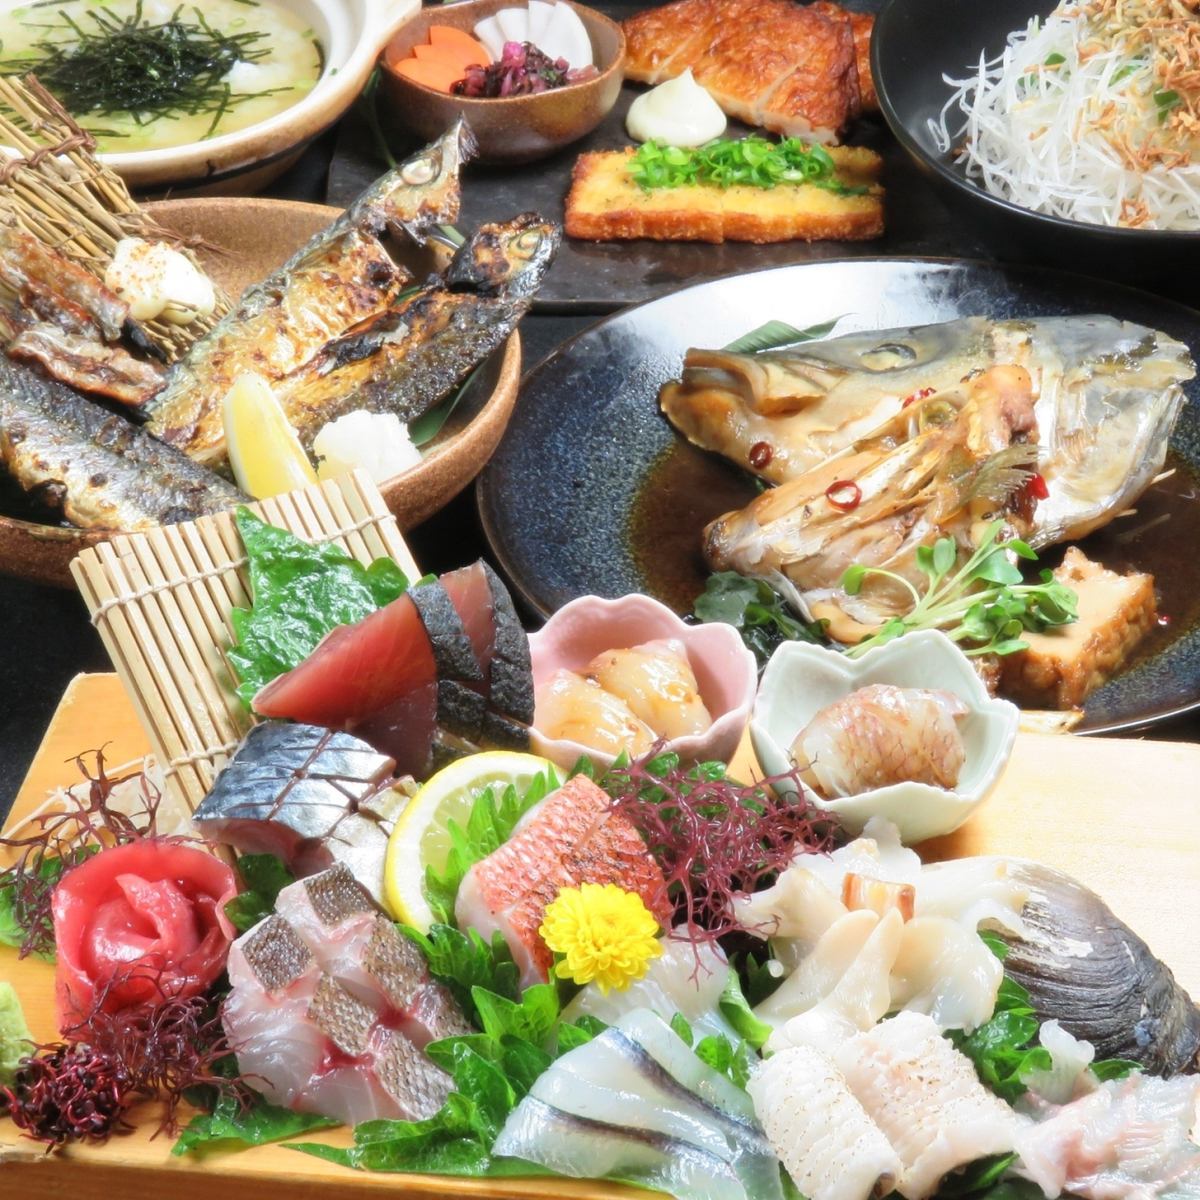 請品嚐只有魚店直營的德多才能提供的瀨戶內產新鮮魚。